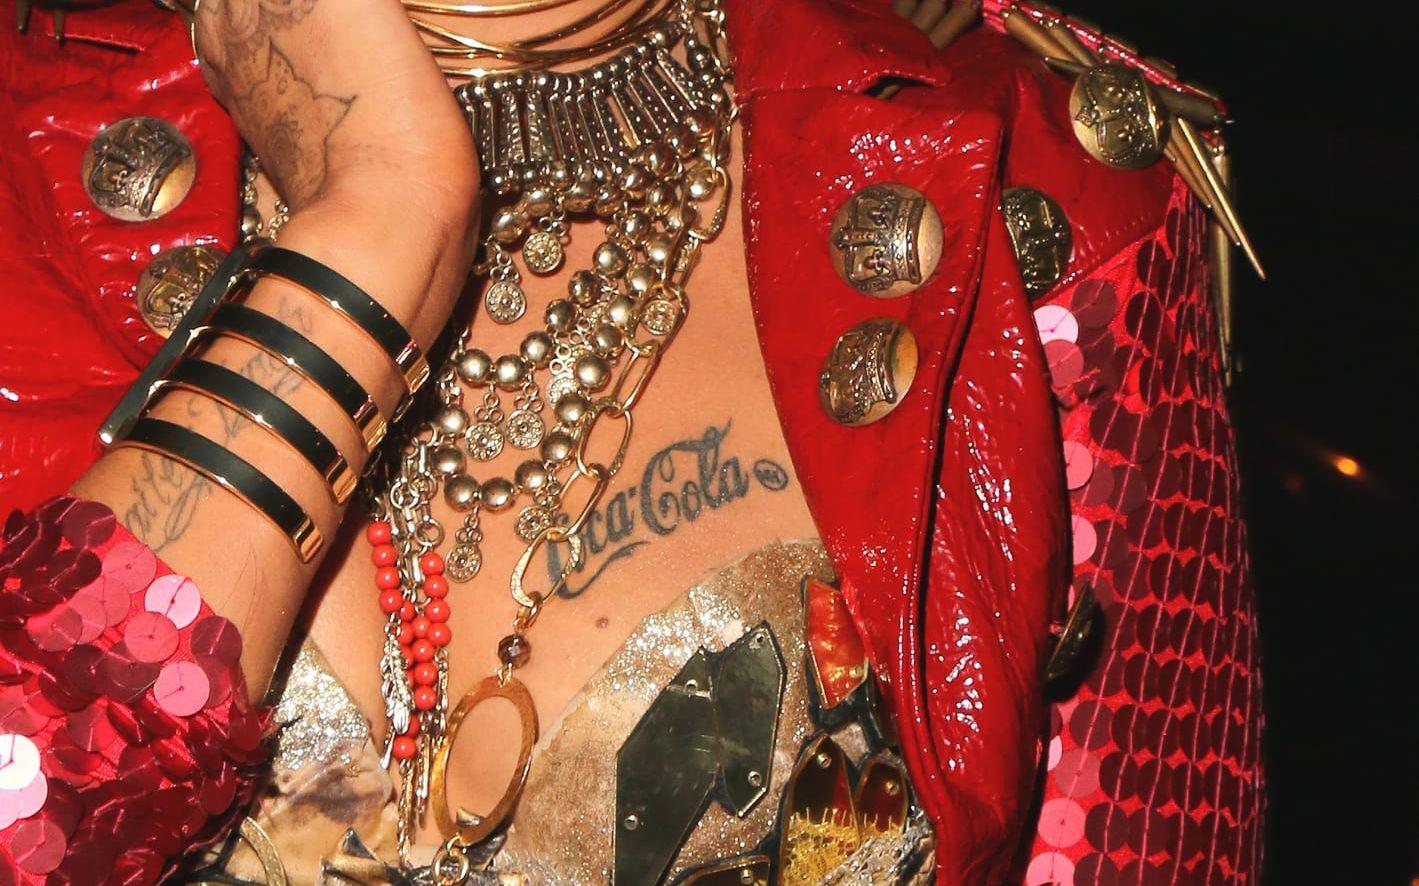 Brittiska sångerskan Neon Hitch har Coca Cola-loggan målad på ena bröstet